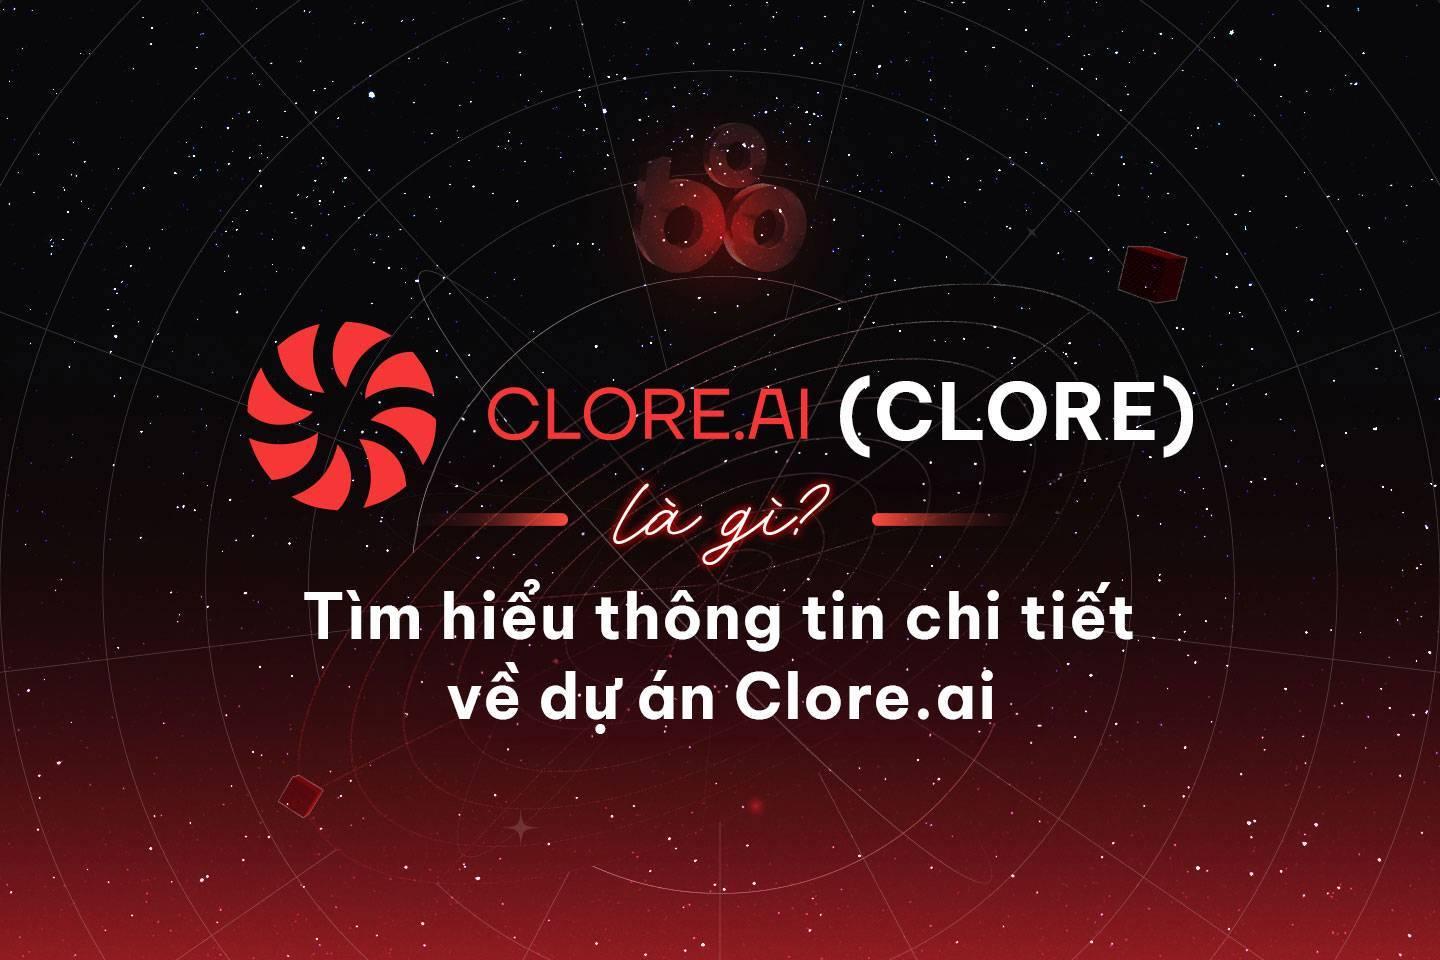 cloreai-clore-la-gi-tim-hieu-thong-tin-chi-tiet-ve-du-an-cloreai